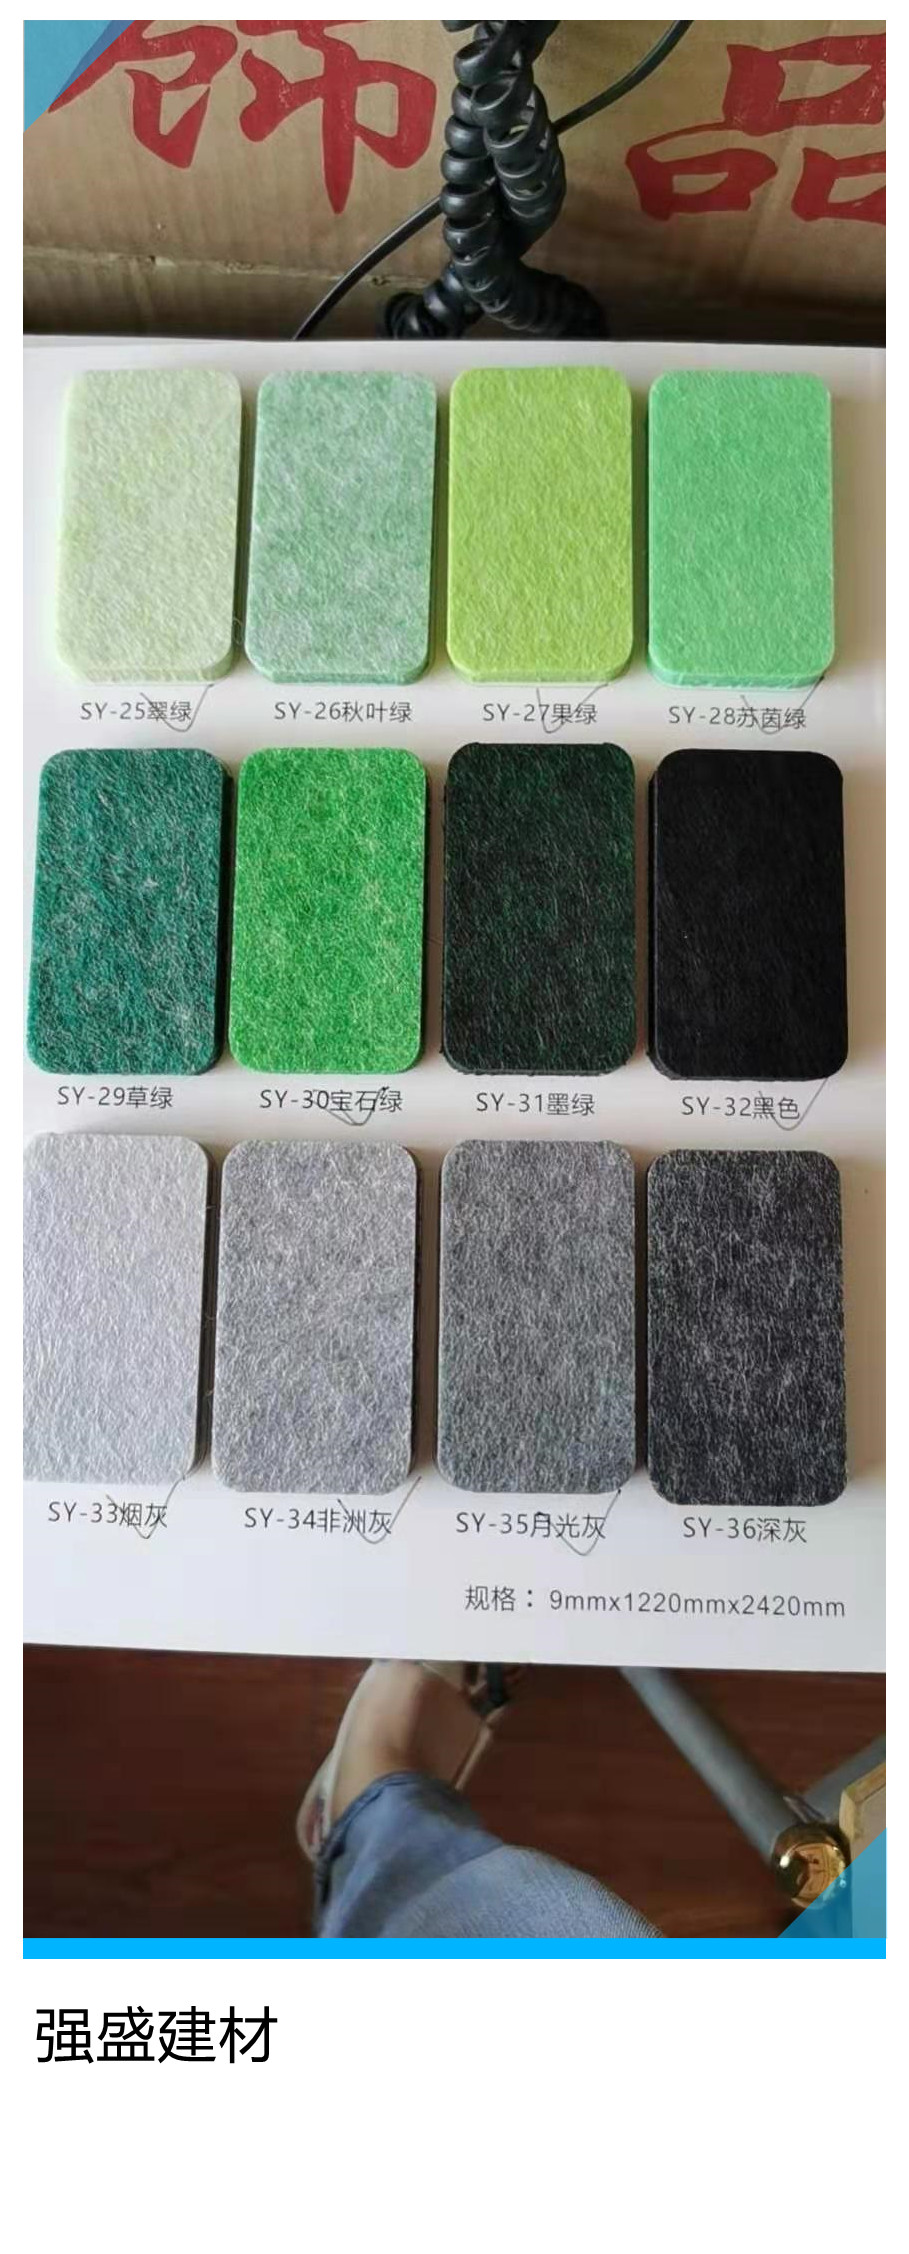 奎屯市彩色吸音板 聚酯纤维吸音板 吸音板规格强盛大量供应